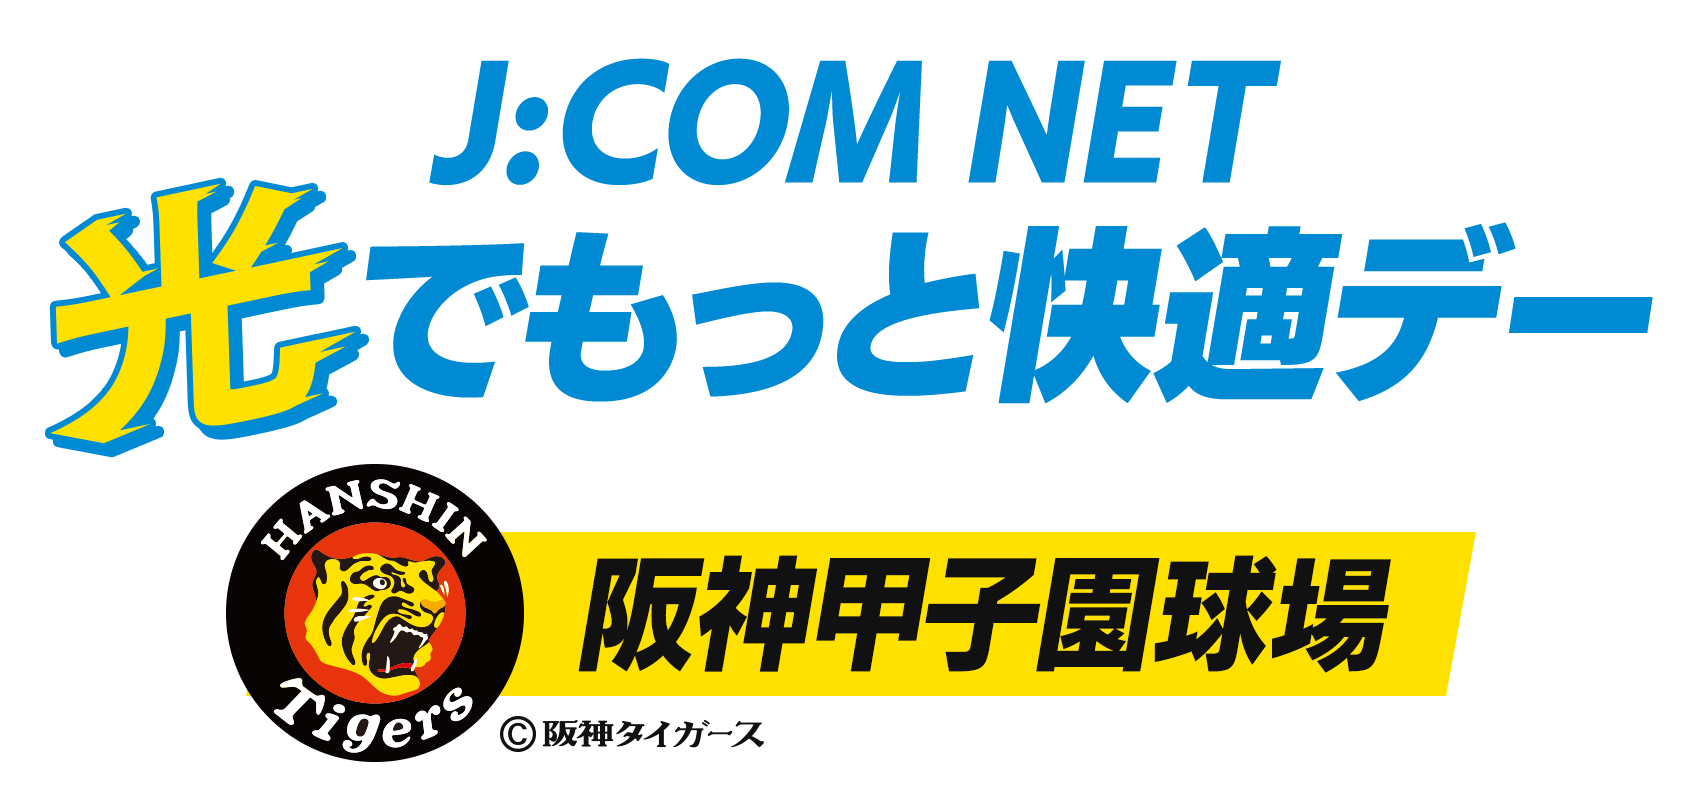 J:COM NET 光でもっと快適デー 4/17(日) 阪神vs巨人 at 阪神甲子園球場